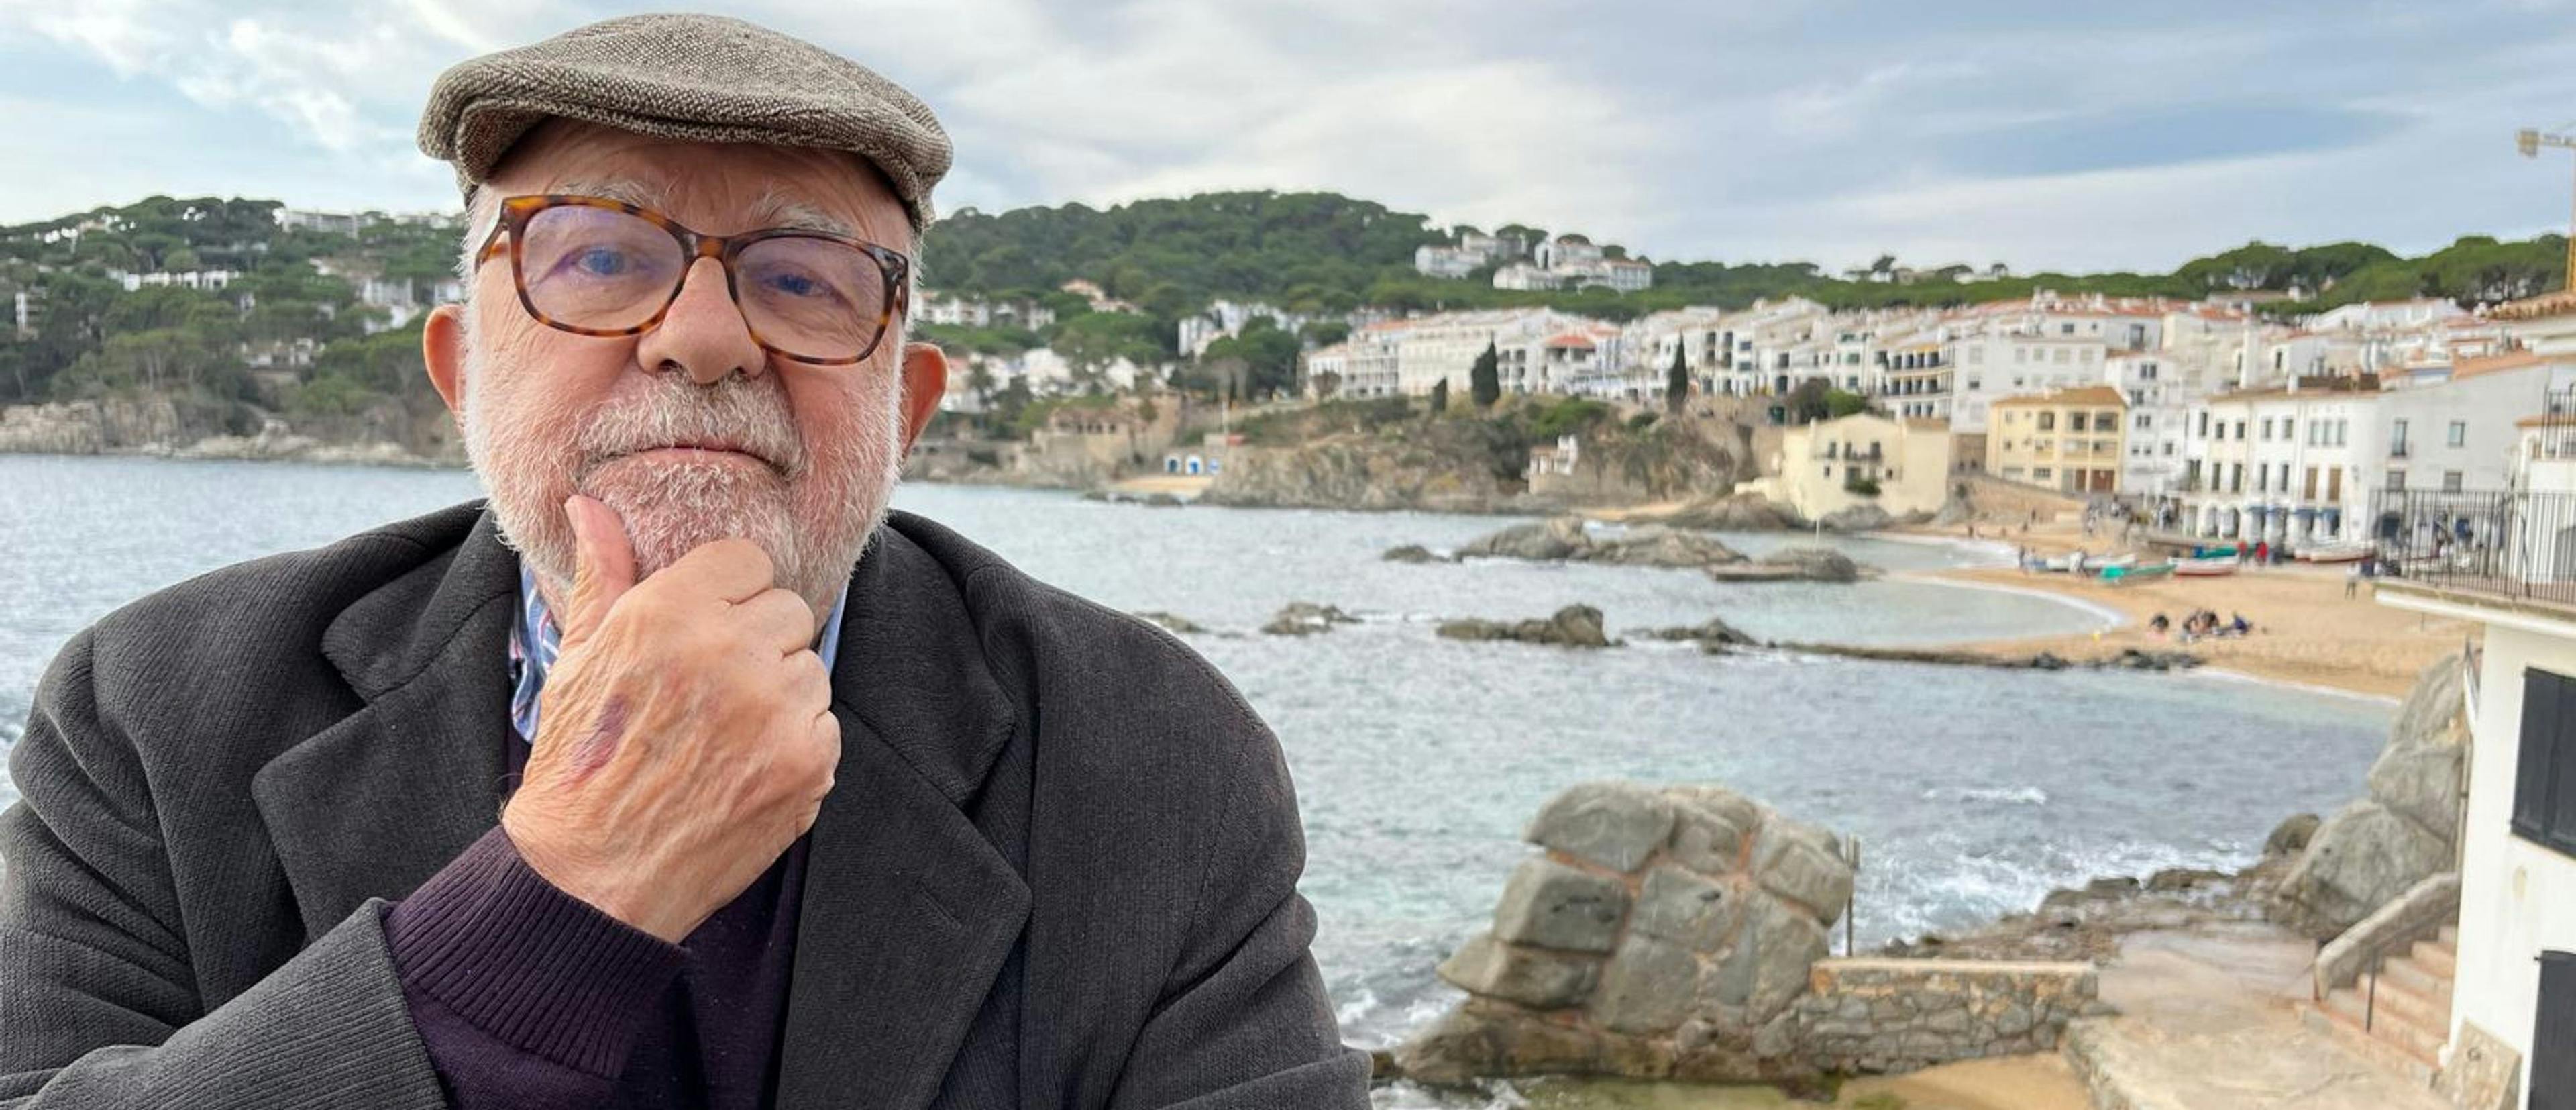 Retrato del periodista y presentador de televisión Jaume Figueras